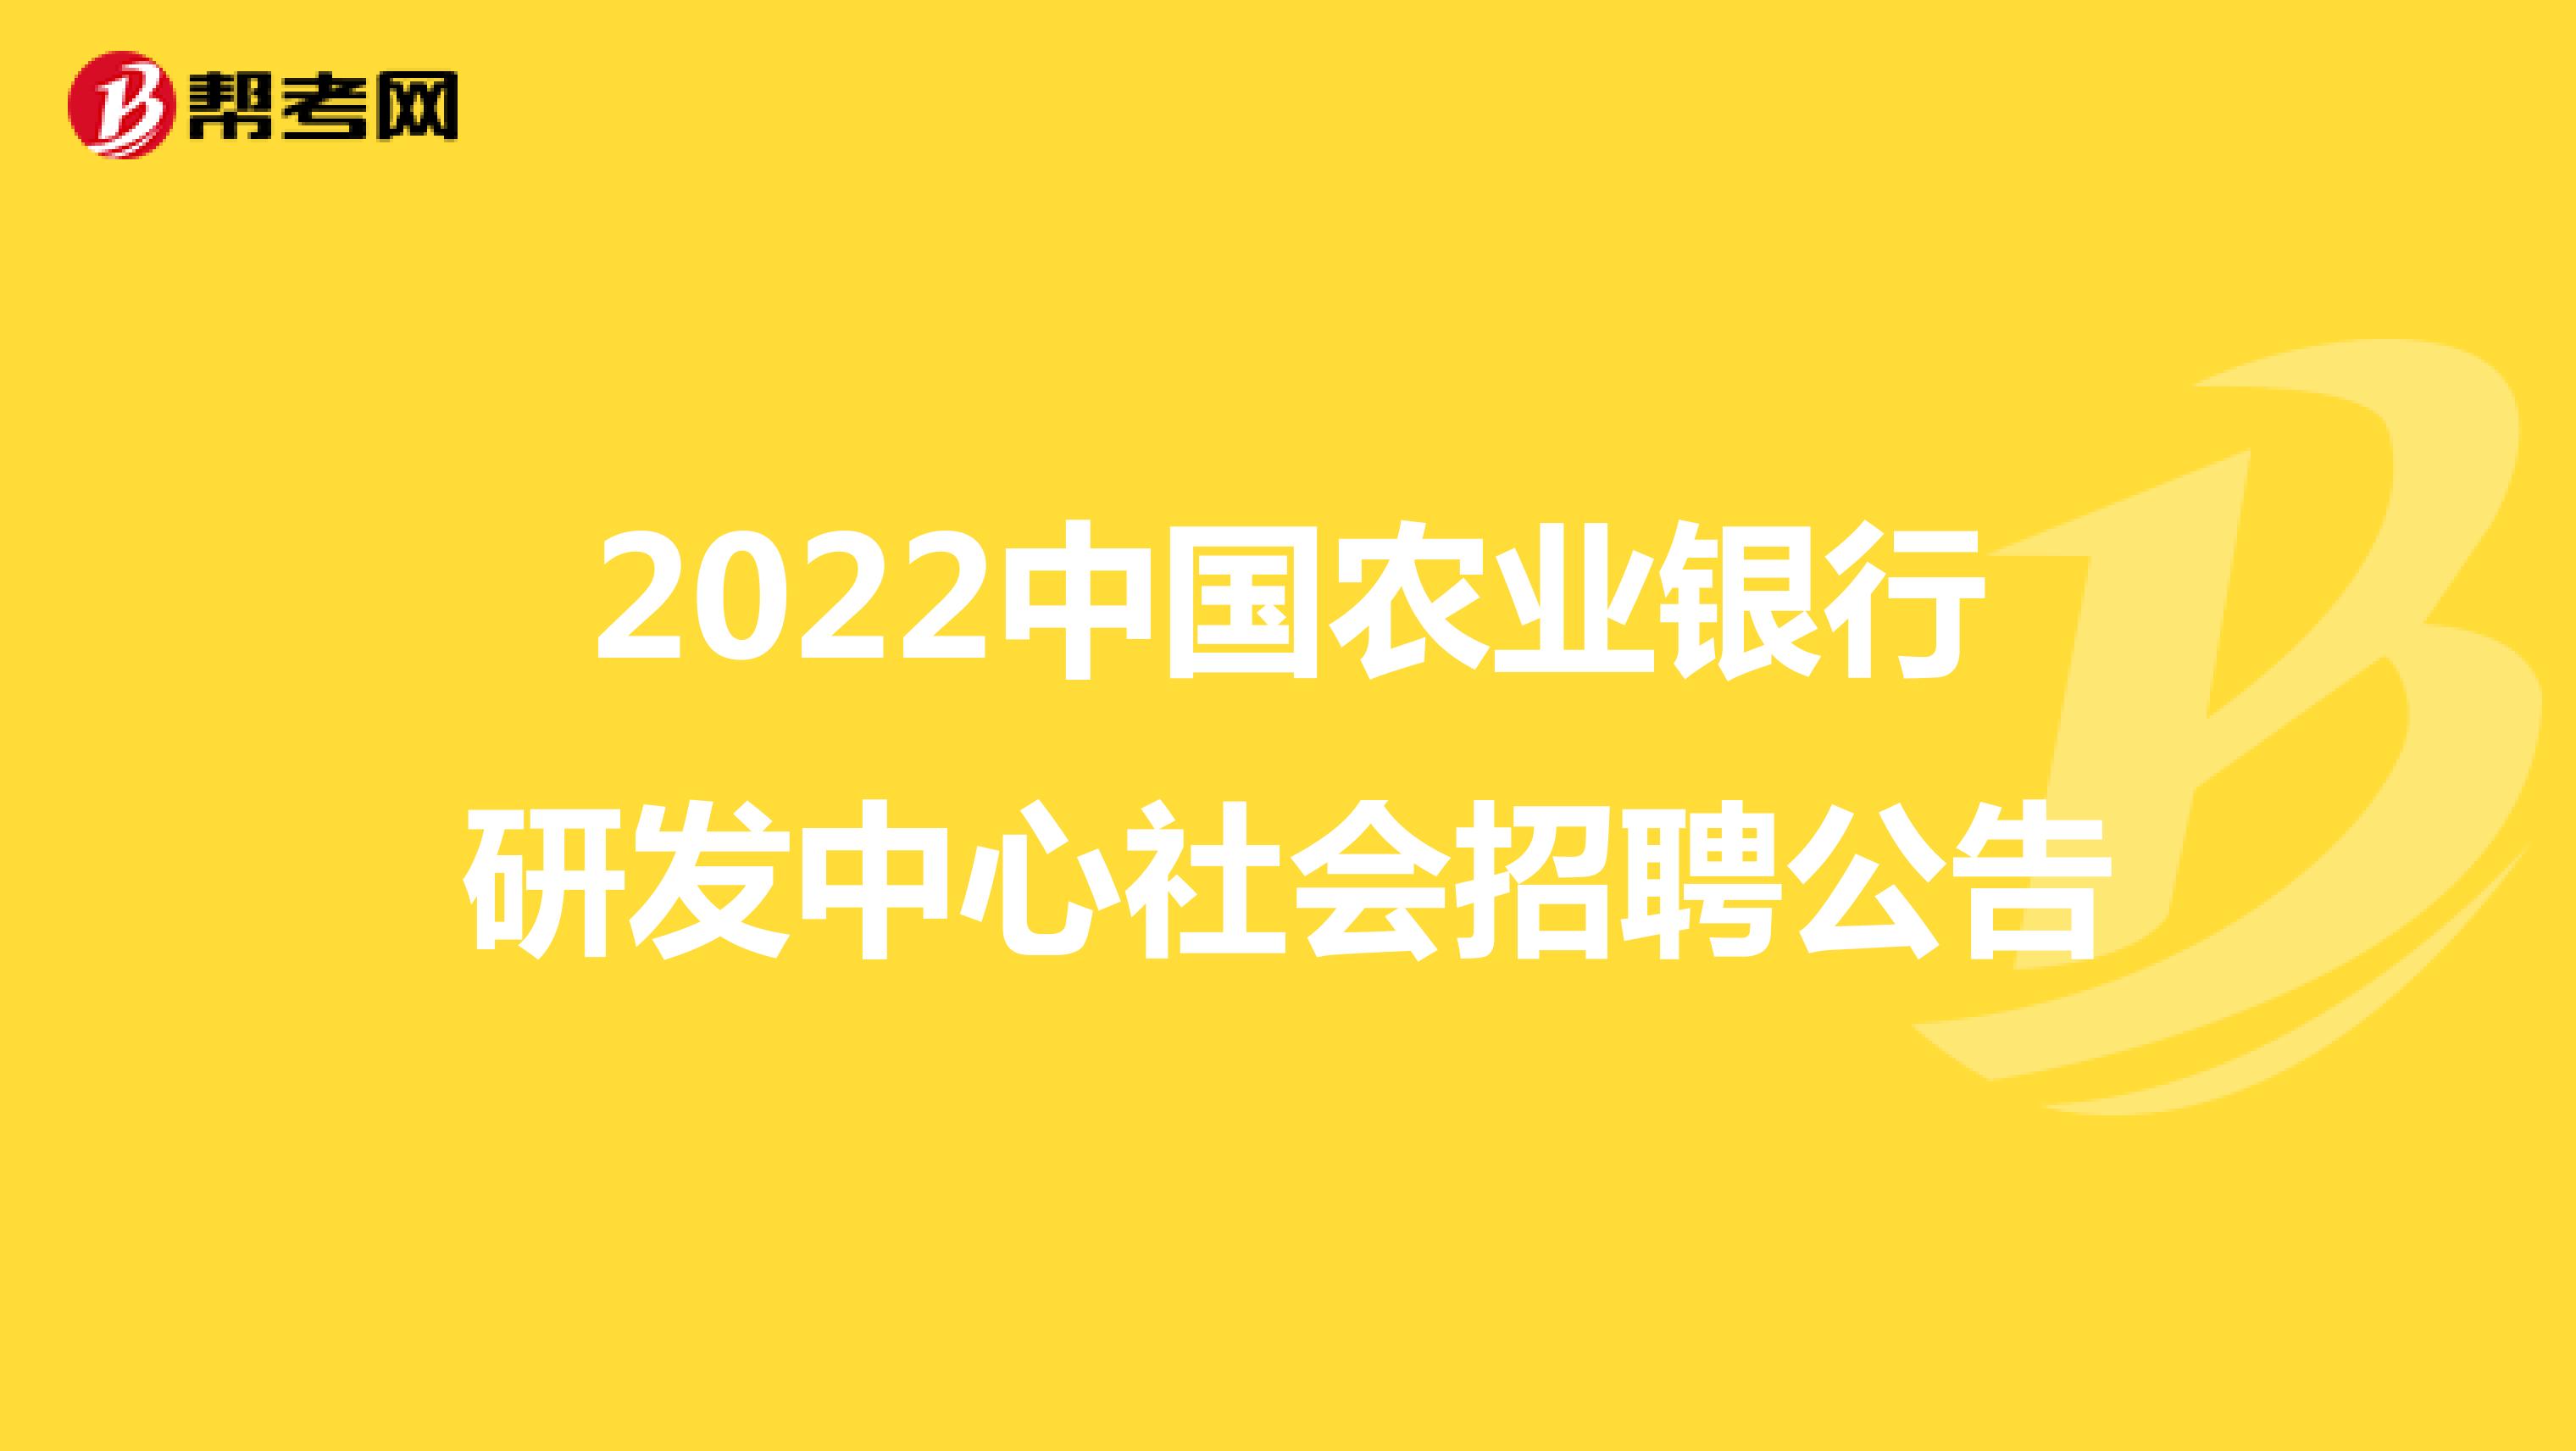 2022中国农业银行研发中心社会招聘公告